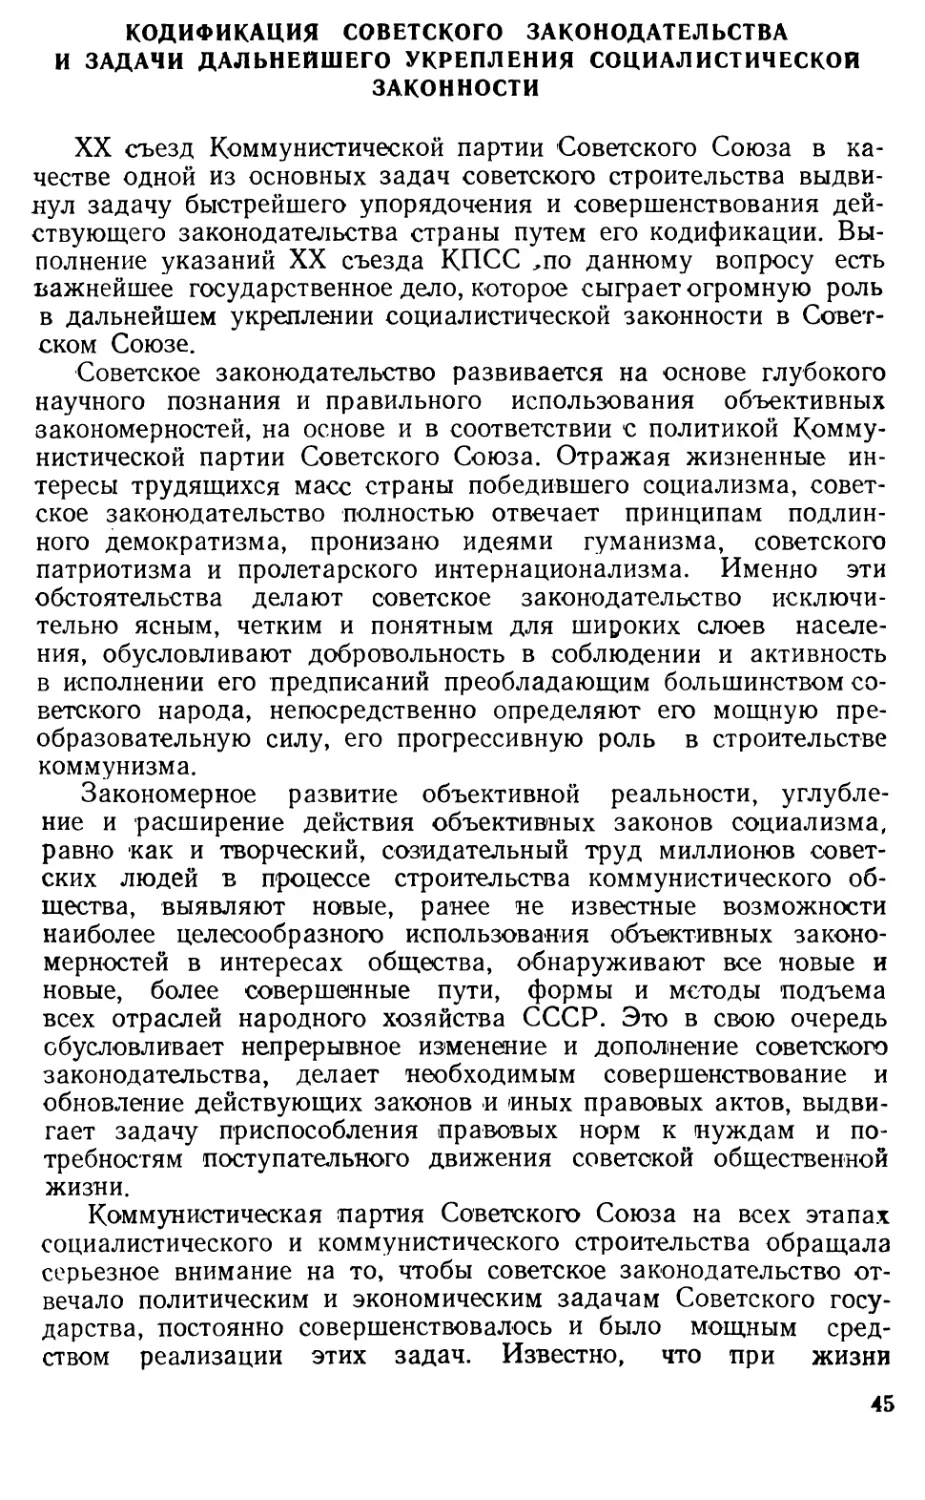 Кодификация советского законодательства и задачи дальнейшего укрепления социалистической законности.